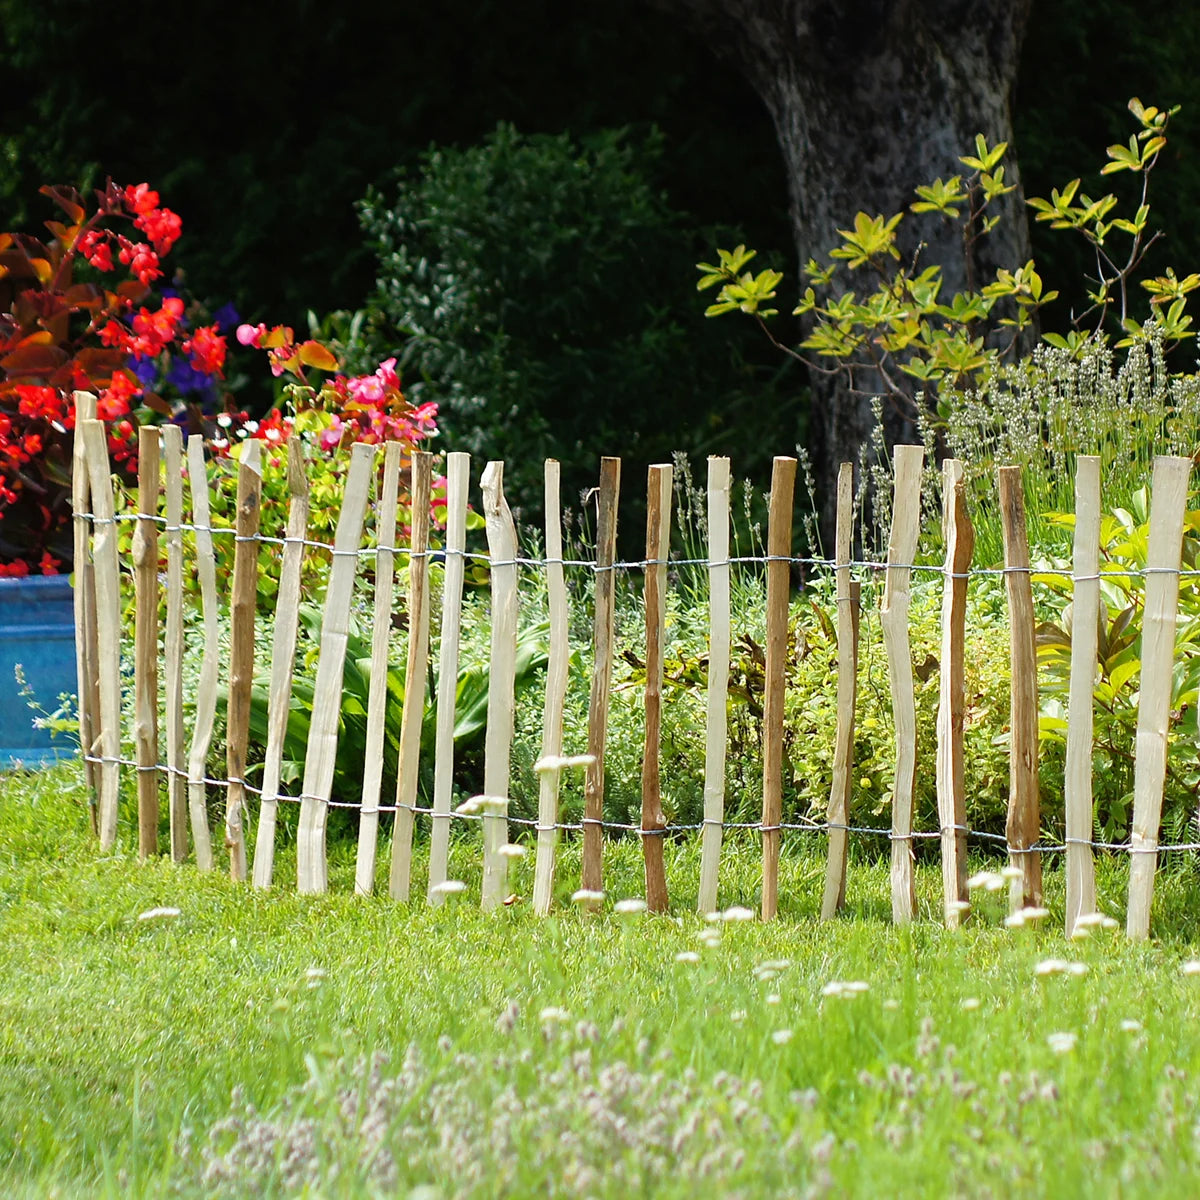 Staketenzaun “Haselnuss” als Sichtschutz in einem Garten